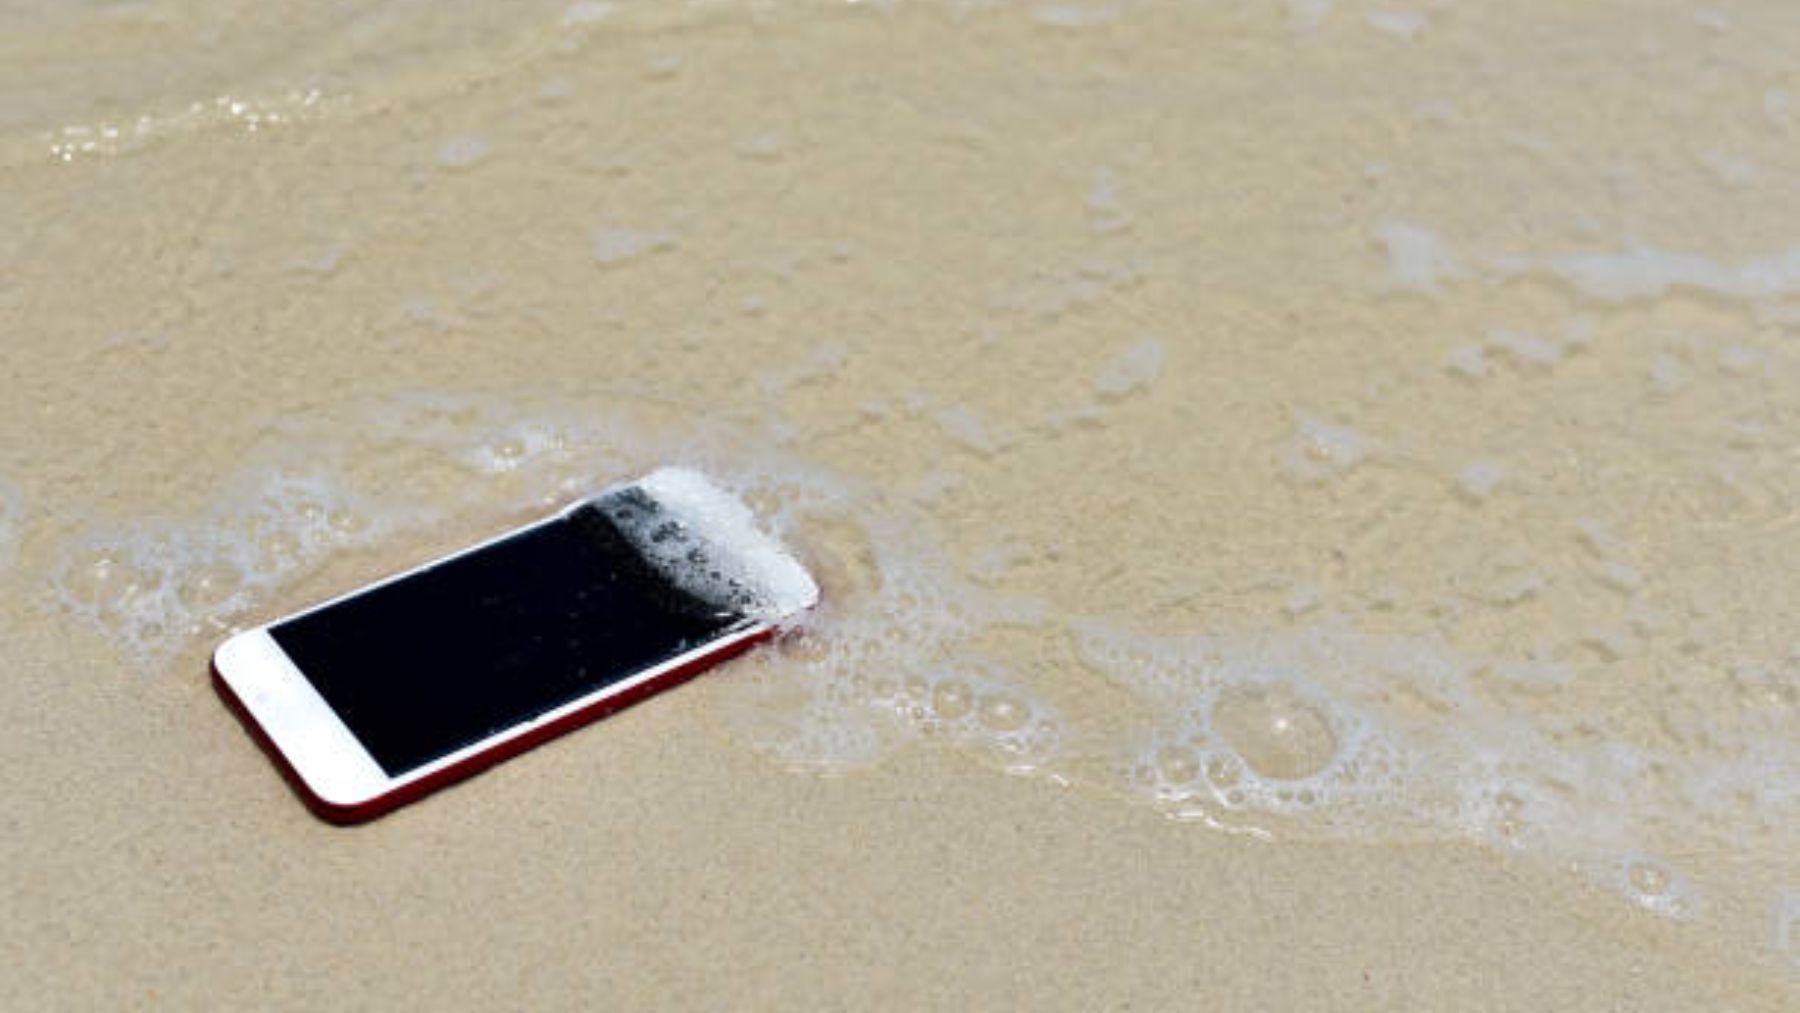 La playa y el mar pueden dañar tu smartphone: cómo protegerlo